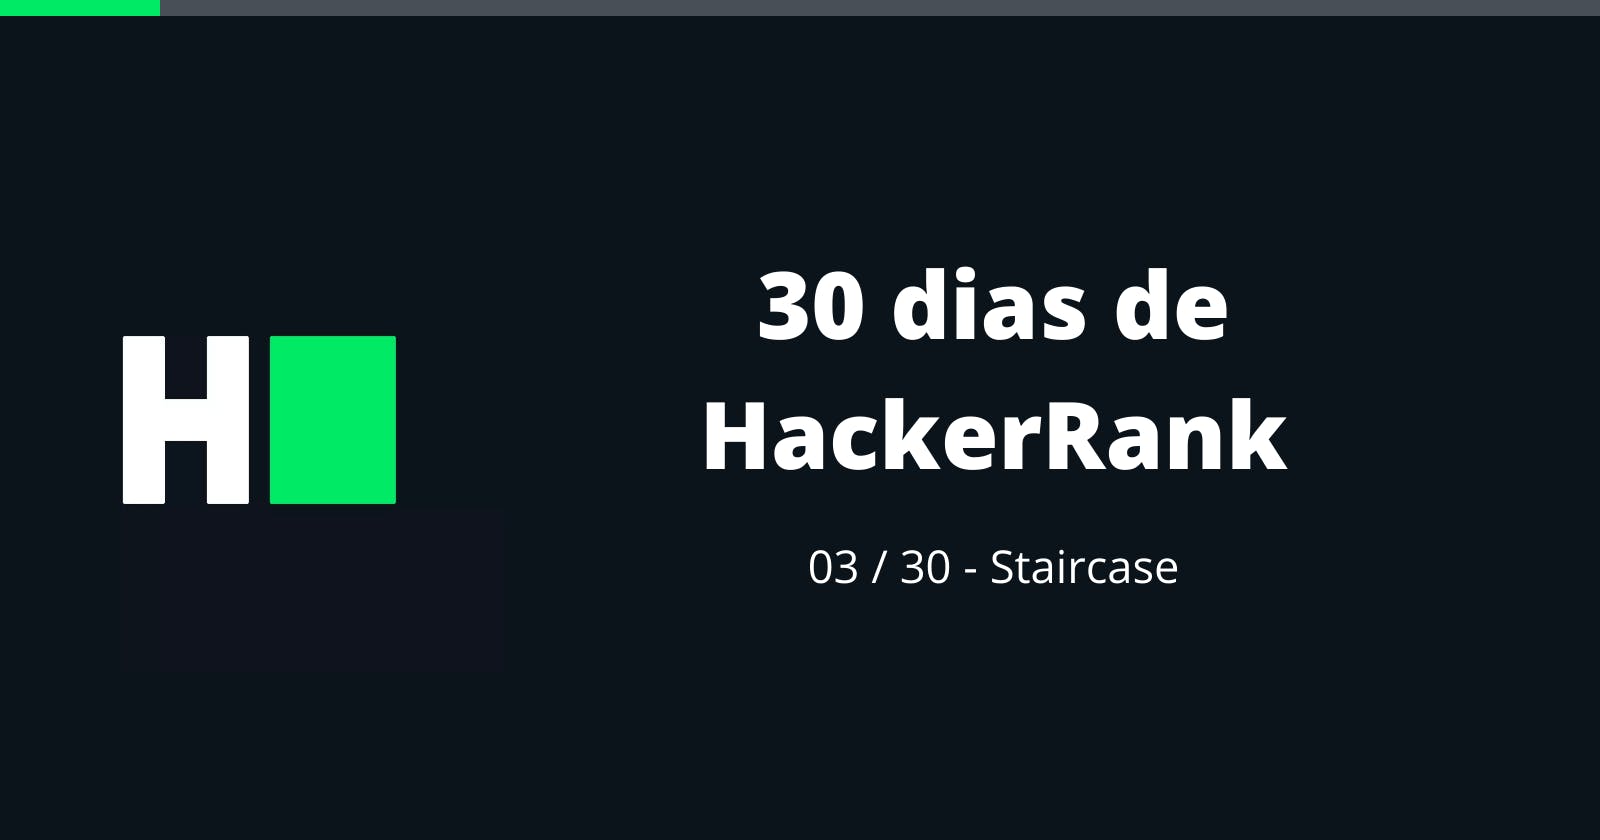 03/30 - 30 dias de HackerRank